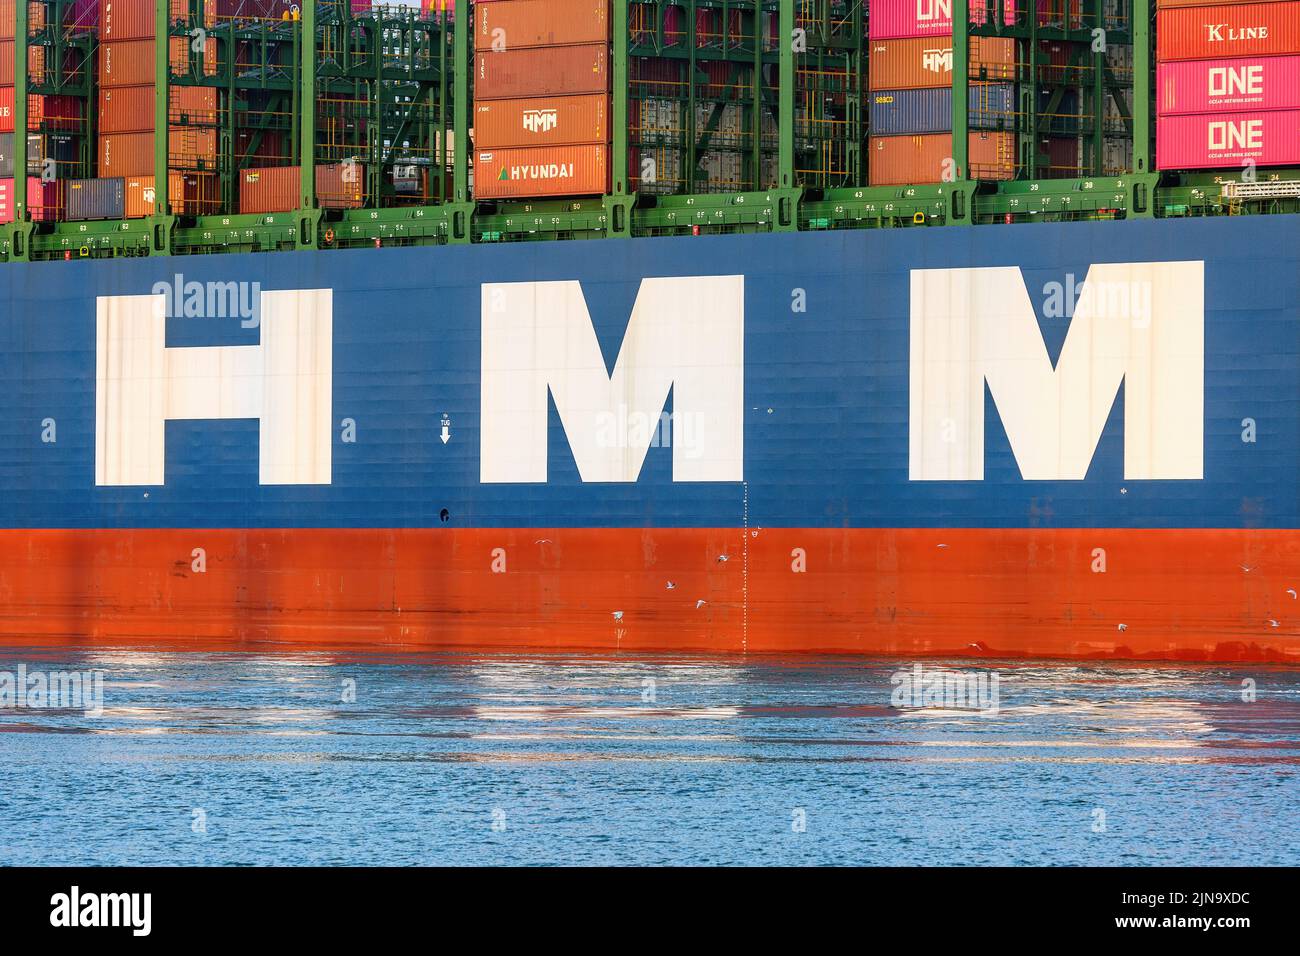 Le logo Hyundai Merchant Marine sur le porte-conteneurs HMM Helsinki - septembre 2020. Banque D'Images